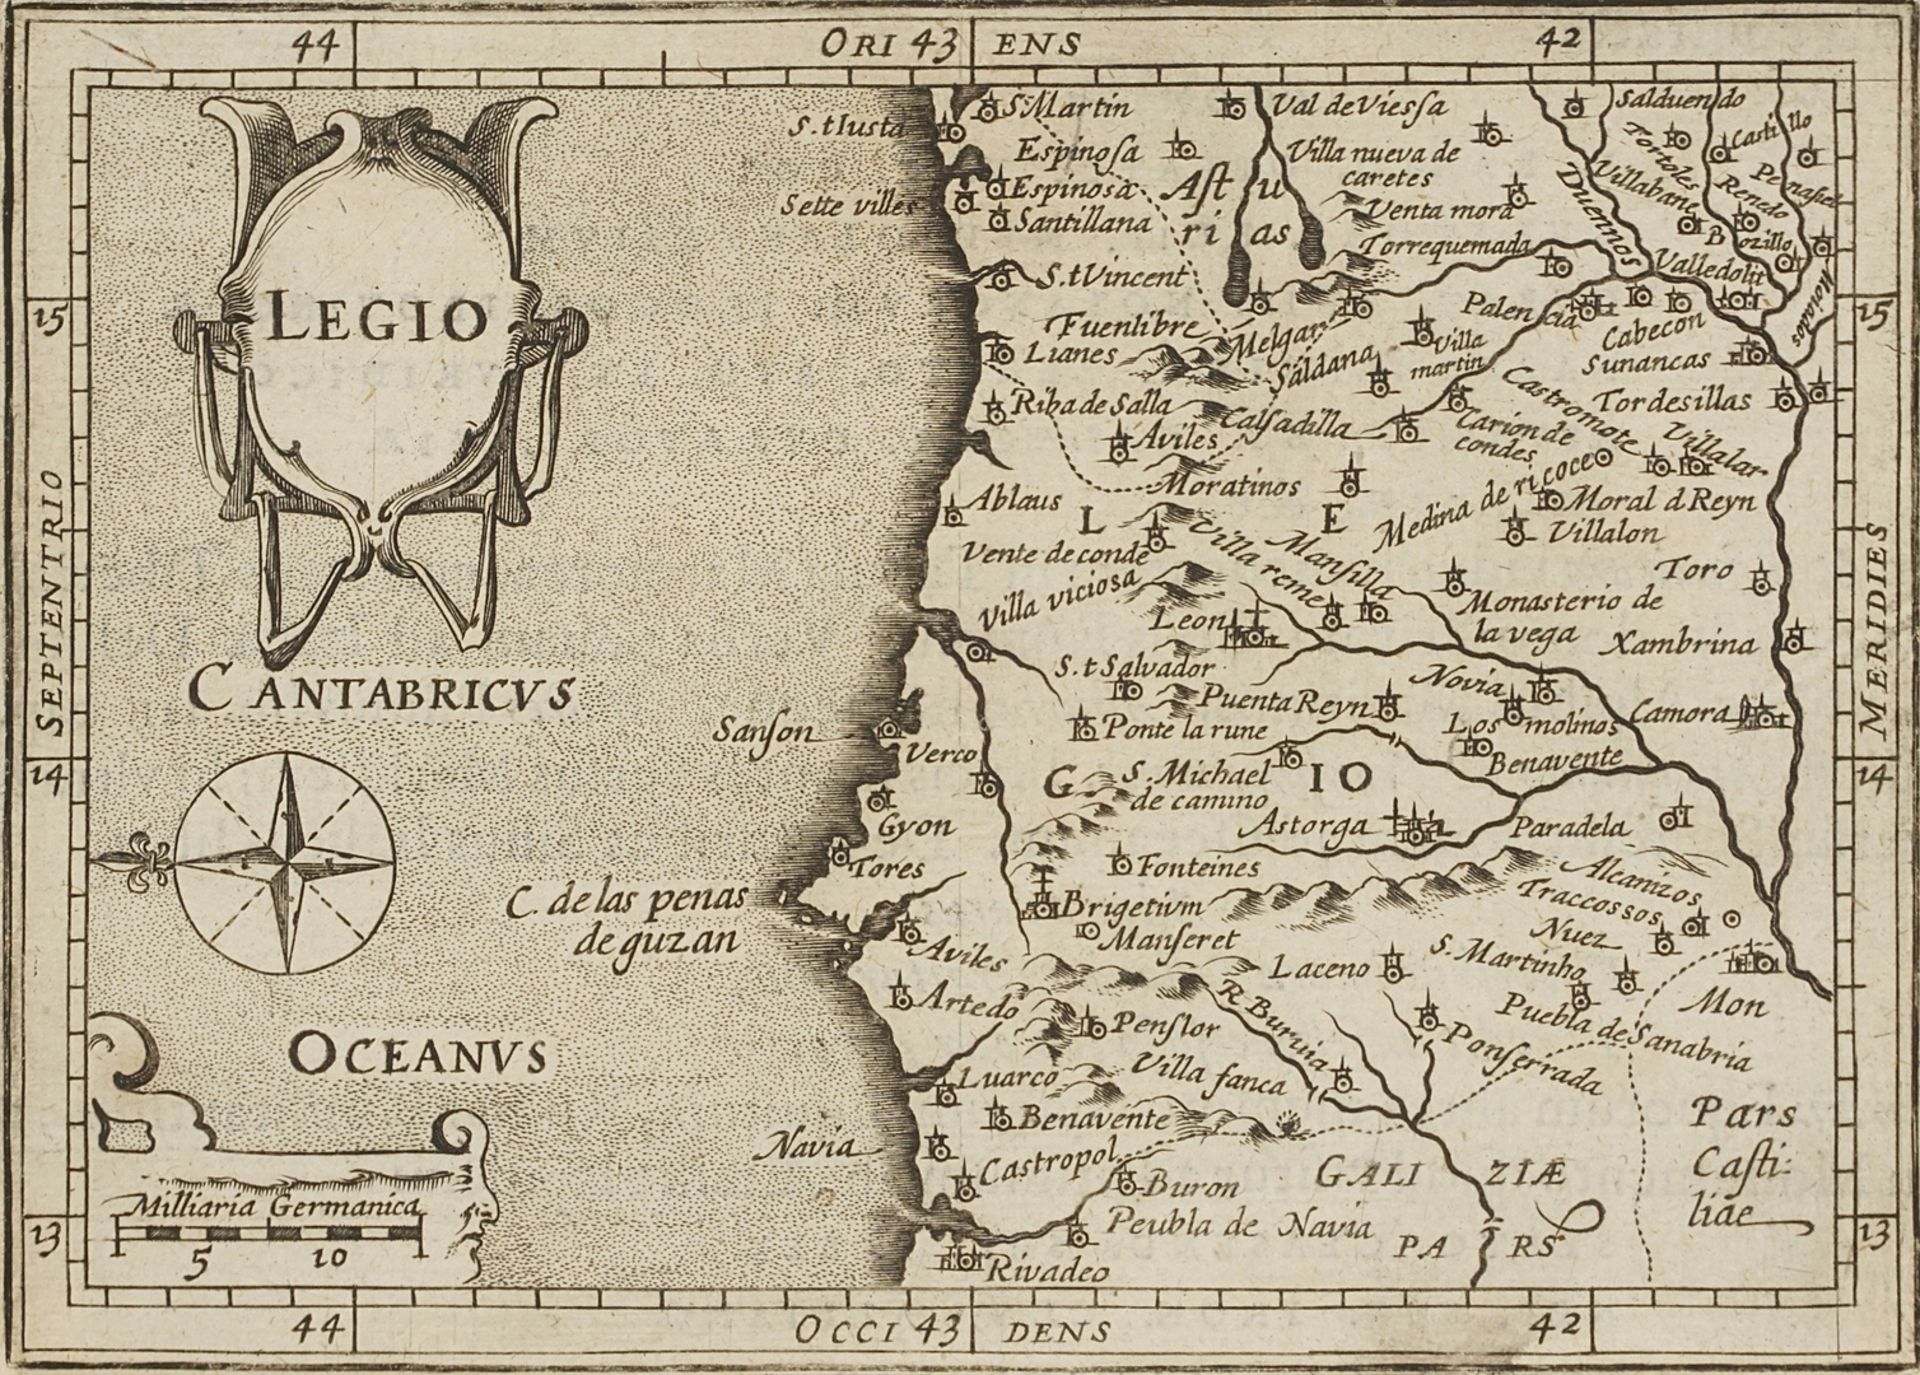 Petrus Bertius (1565-1629), "Legio"